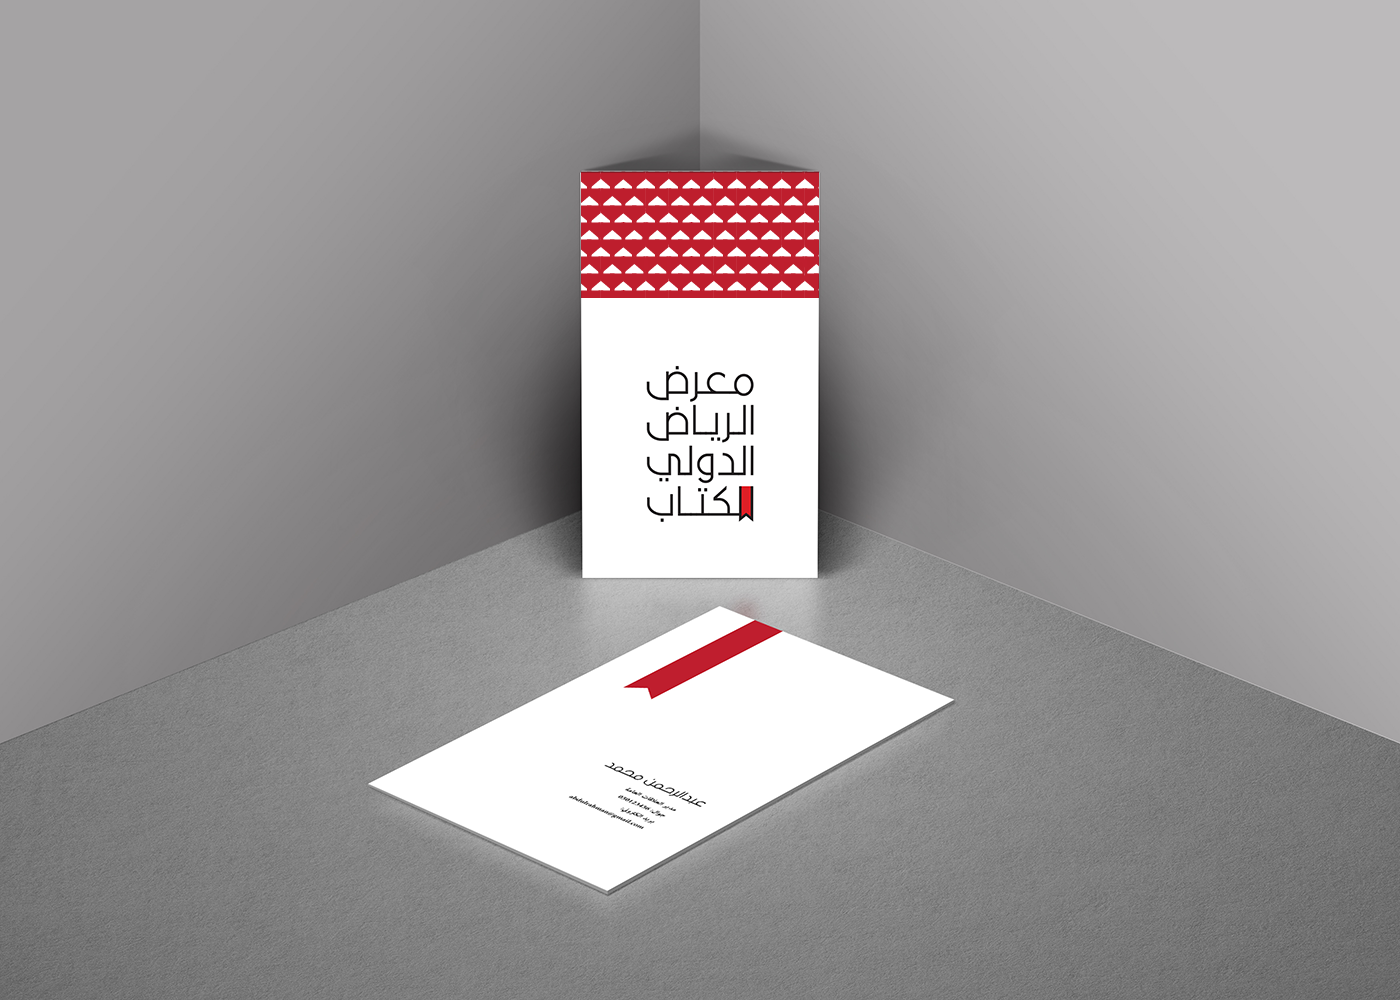 riyadh book Fair logo redesign تصميم شعار معرض الرياض معرض الكتاب